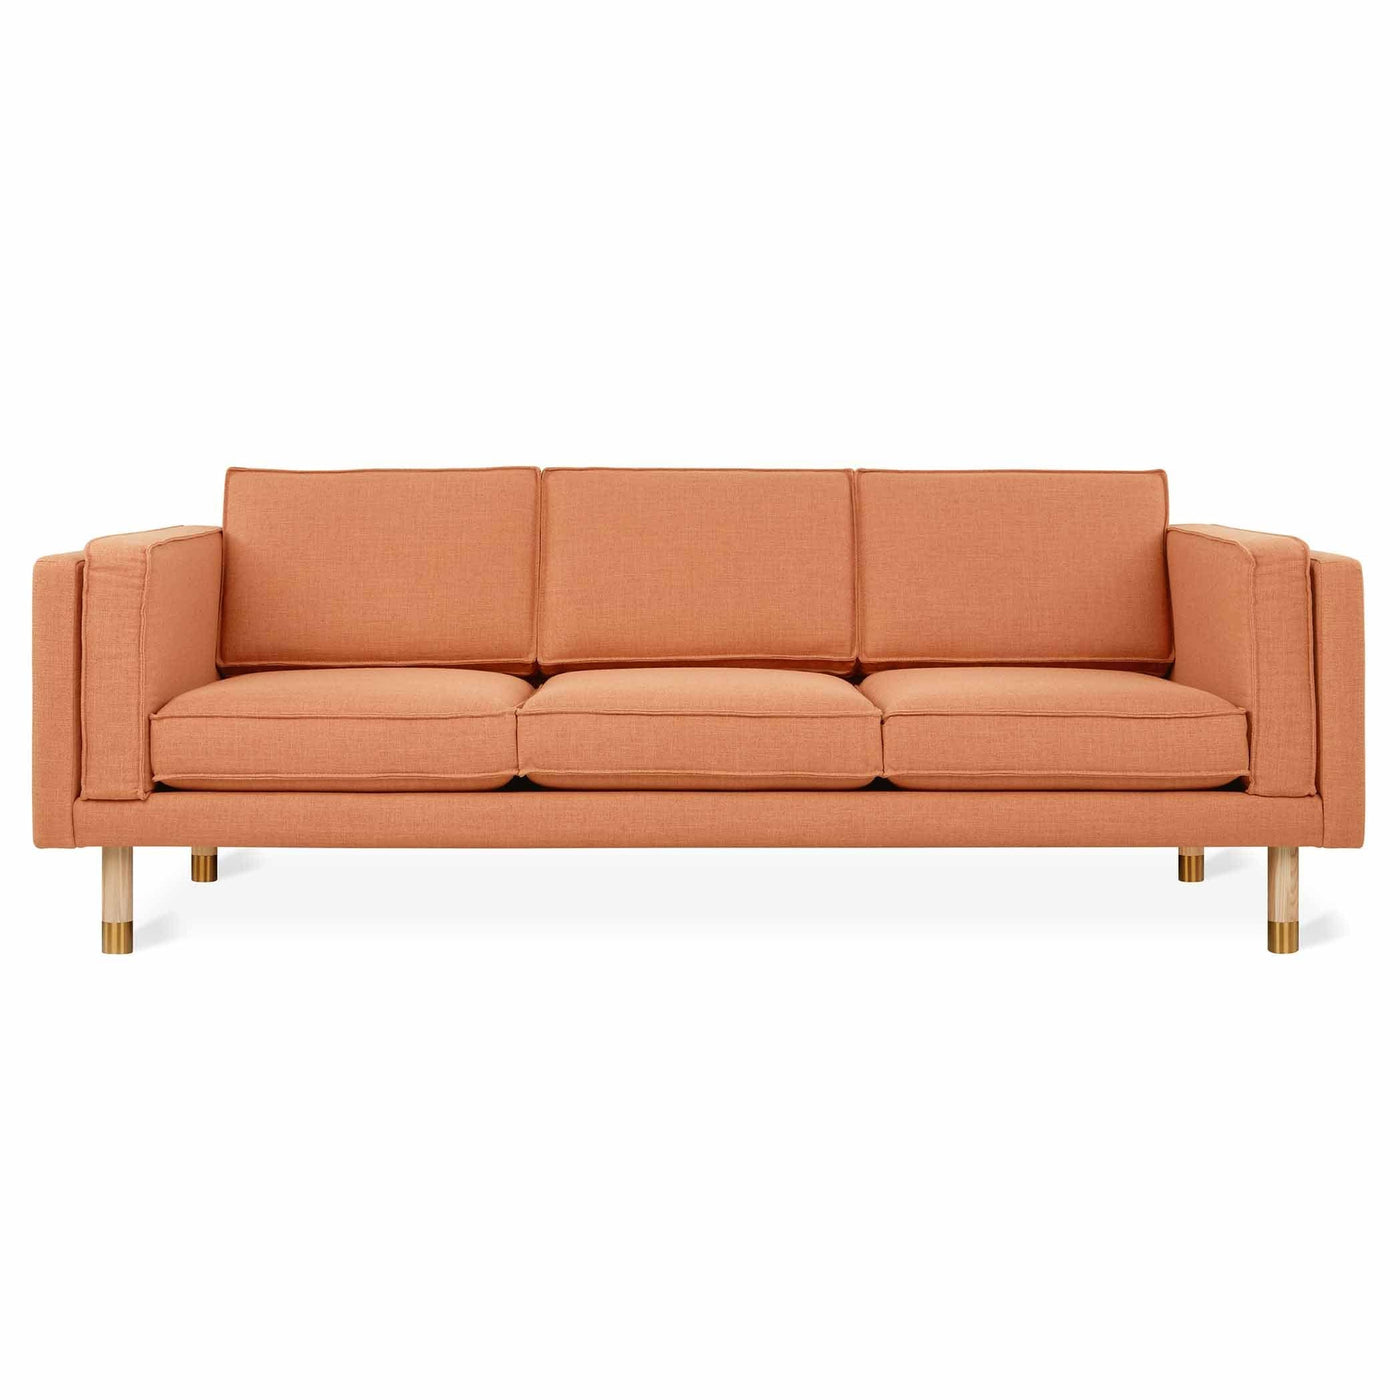 Explorez Augusta de Gus* Modern, un sofa qui va au-delà du simple mobilier pour devenir une déclaration de style et d'engagement envers un avenir plus responsable. Tissu Caledon Sedona.